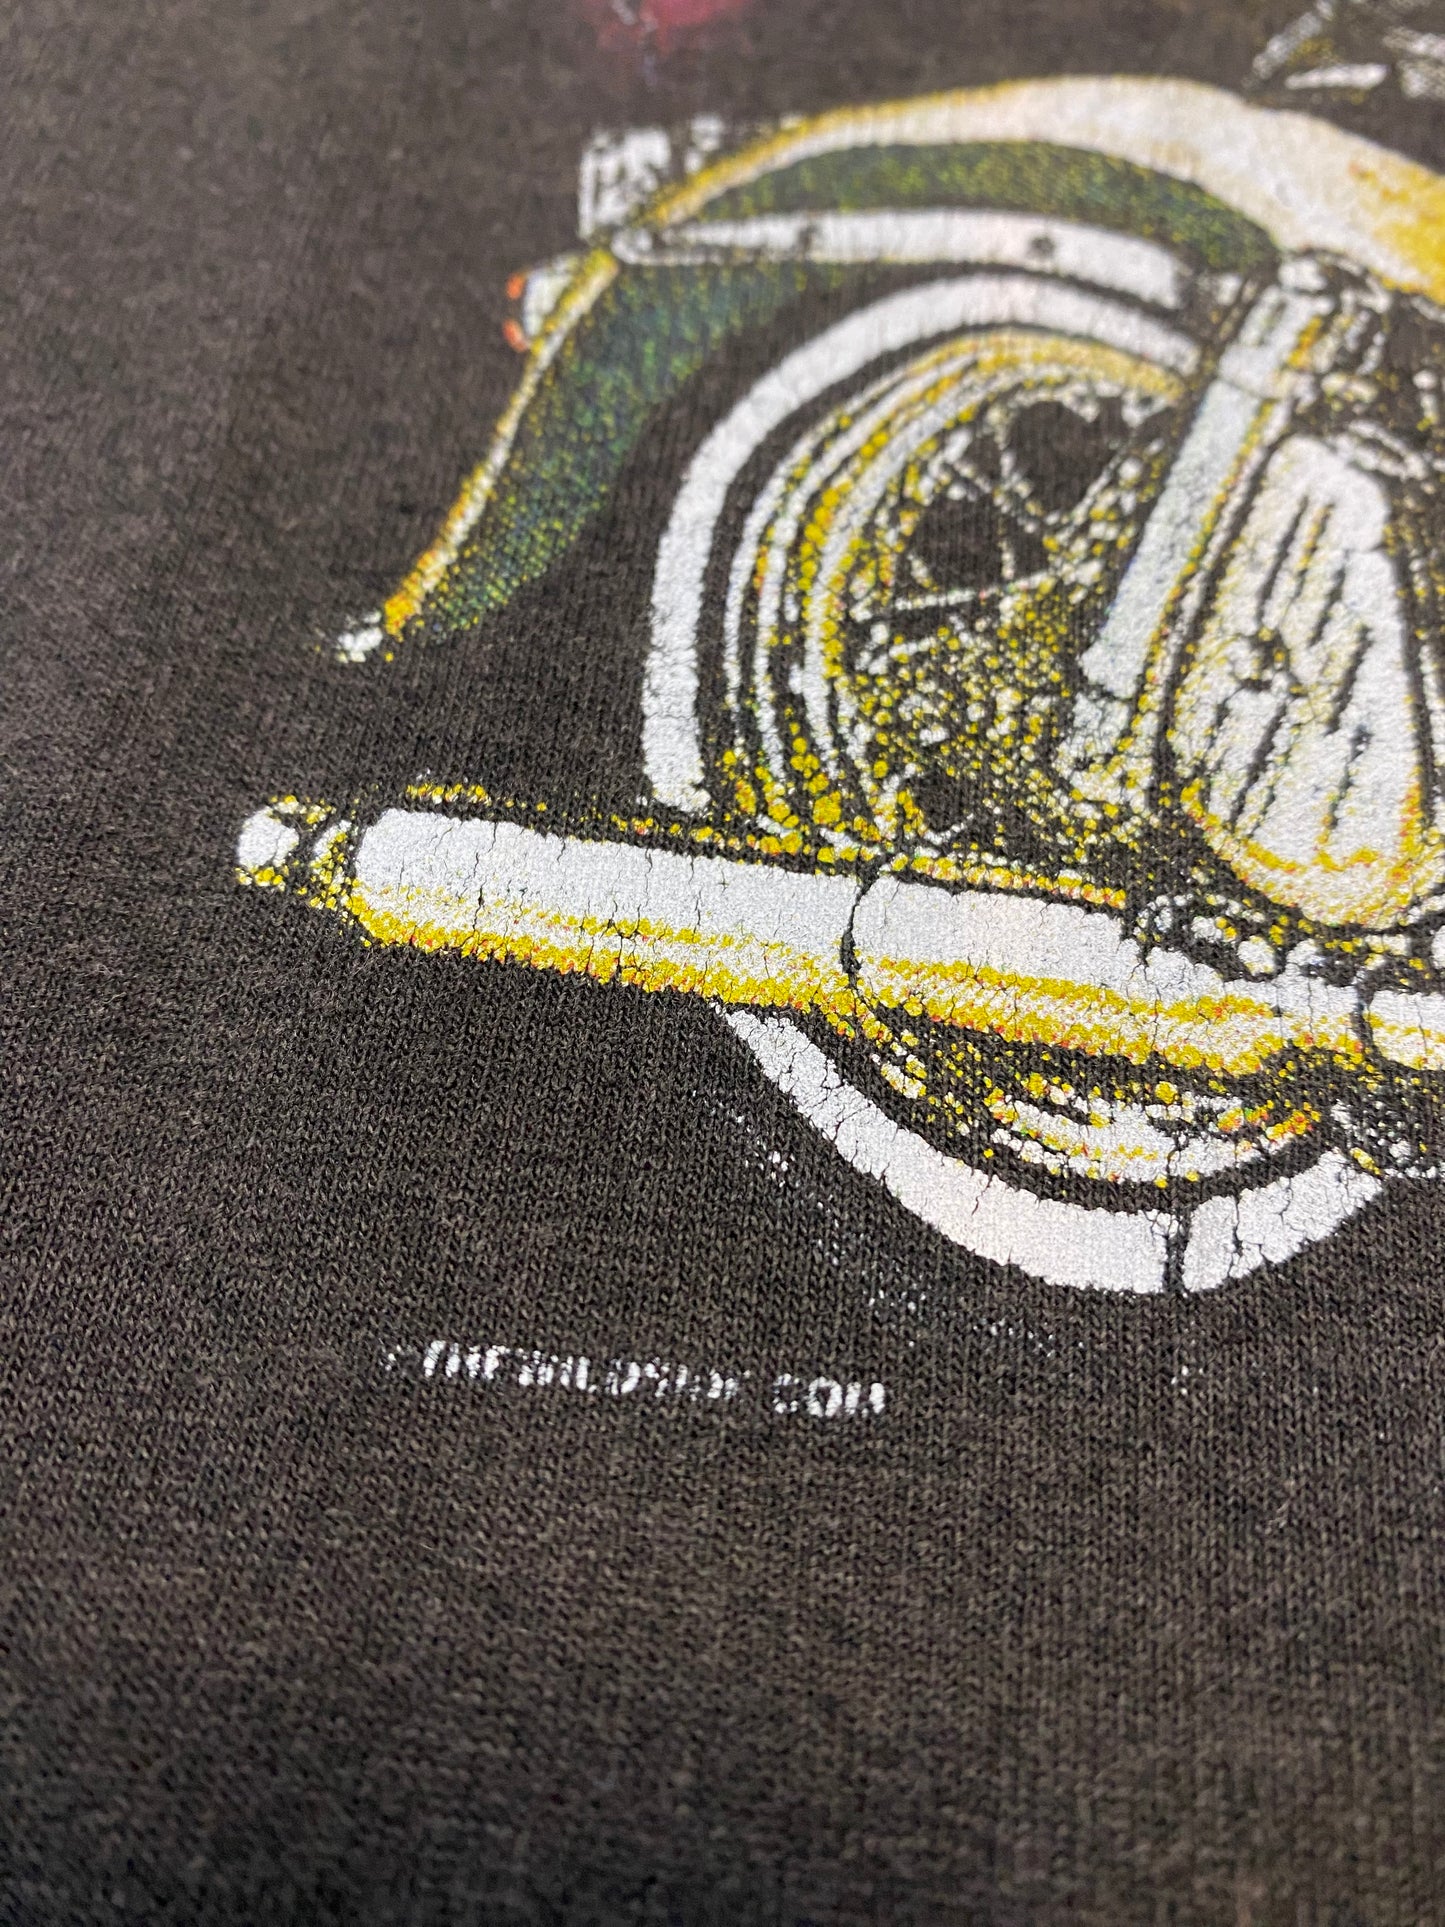 1990’s Survivors Biker T-Shirt XL